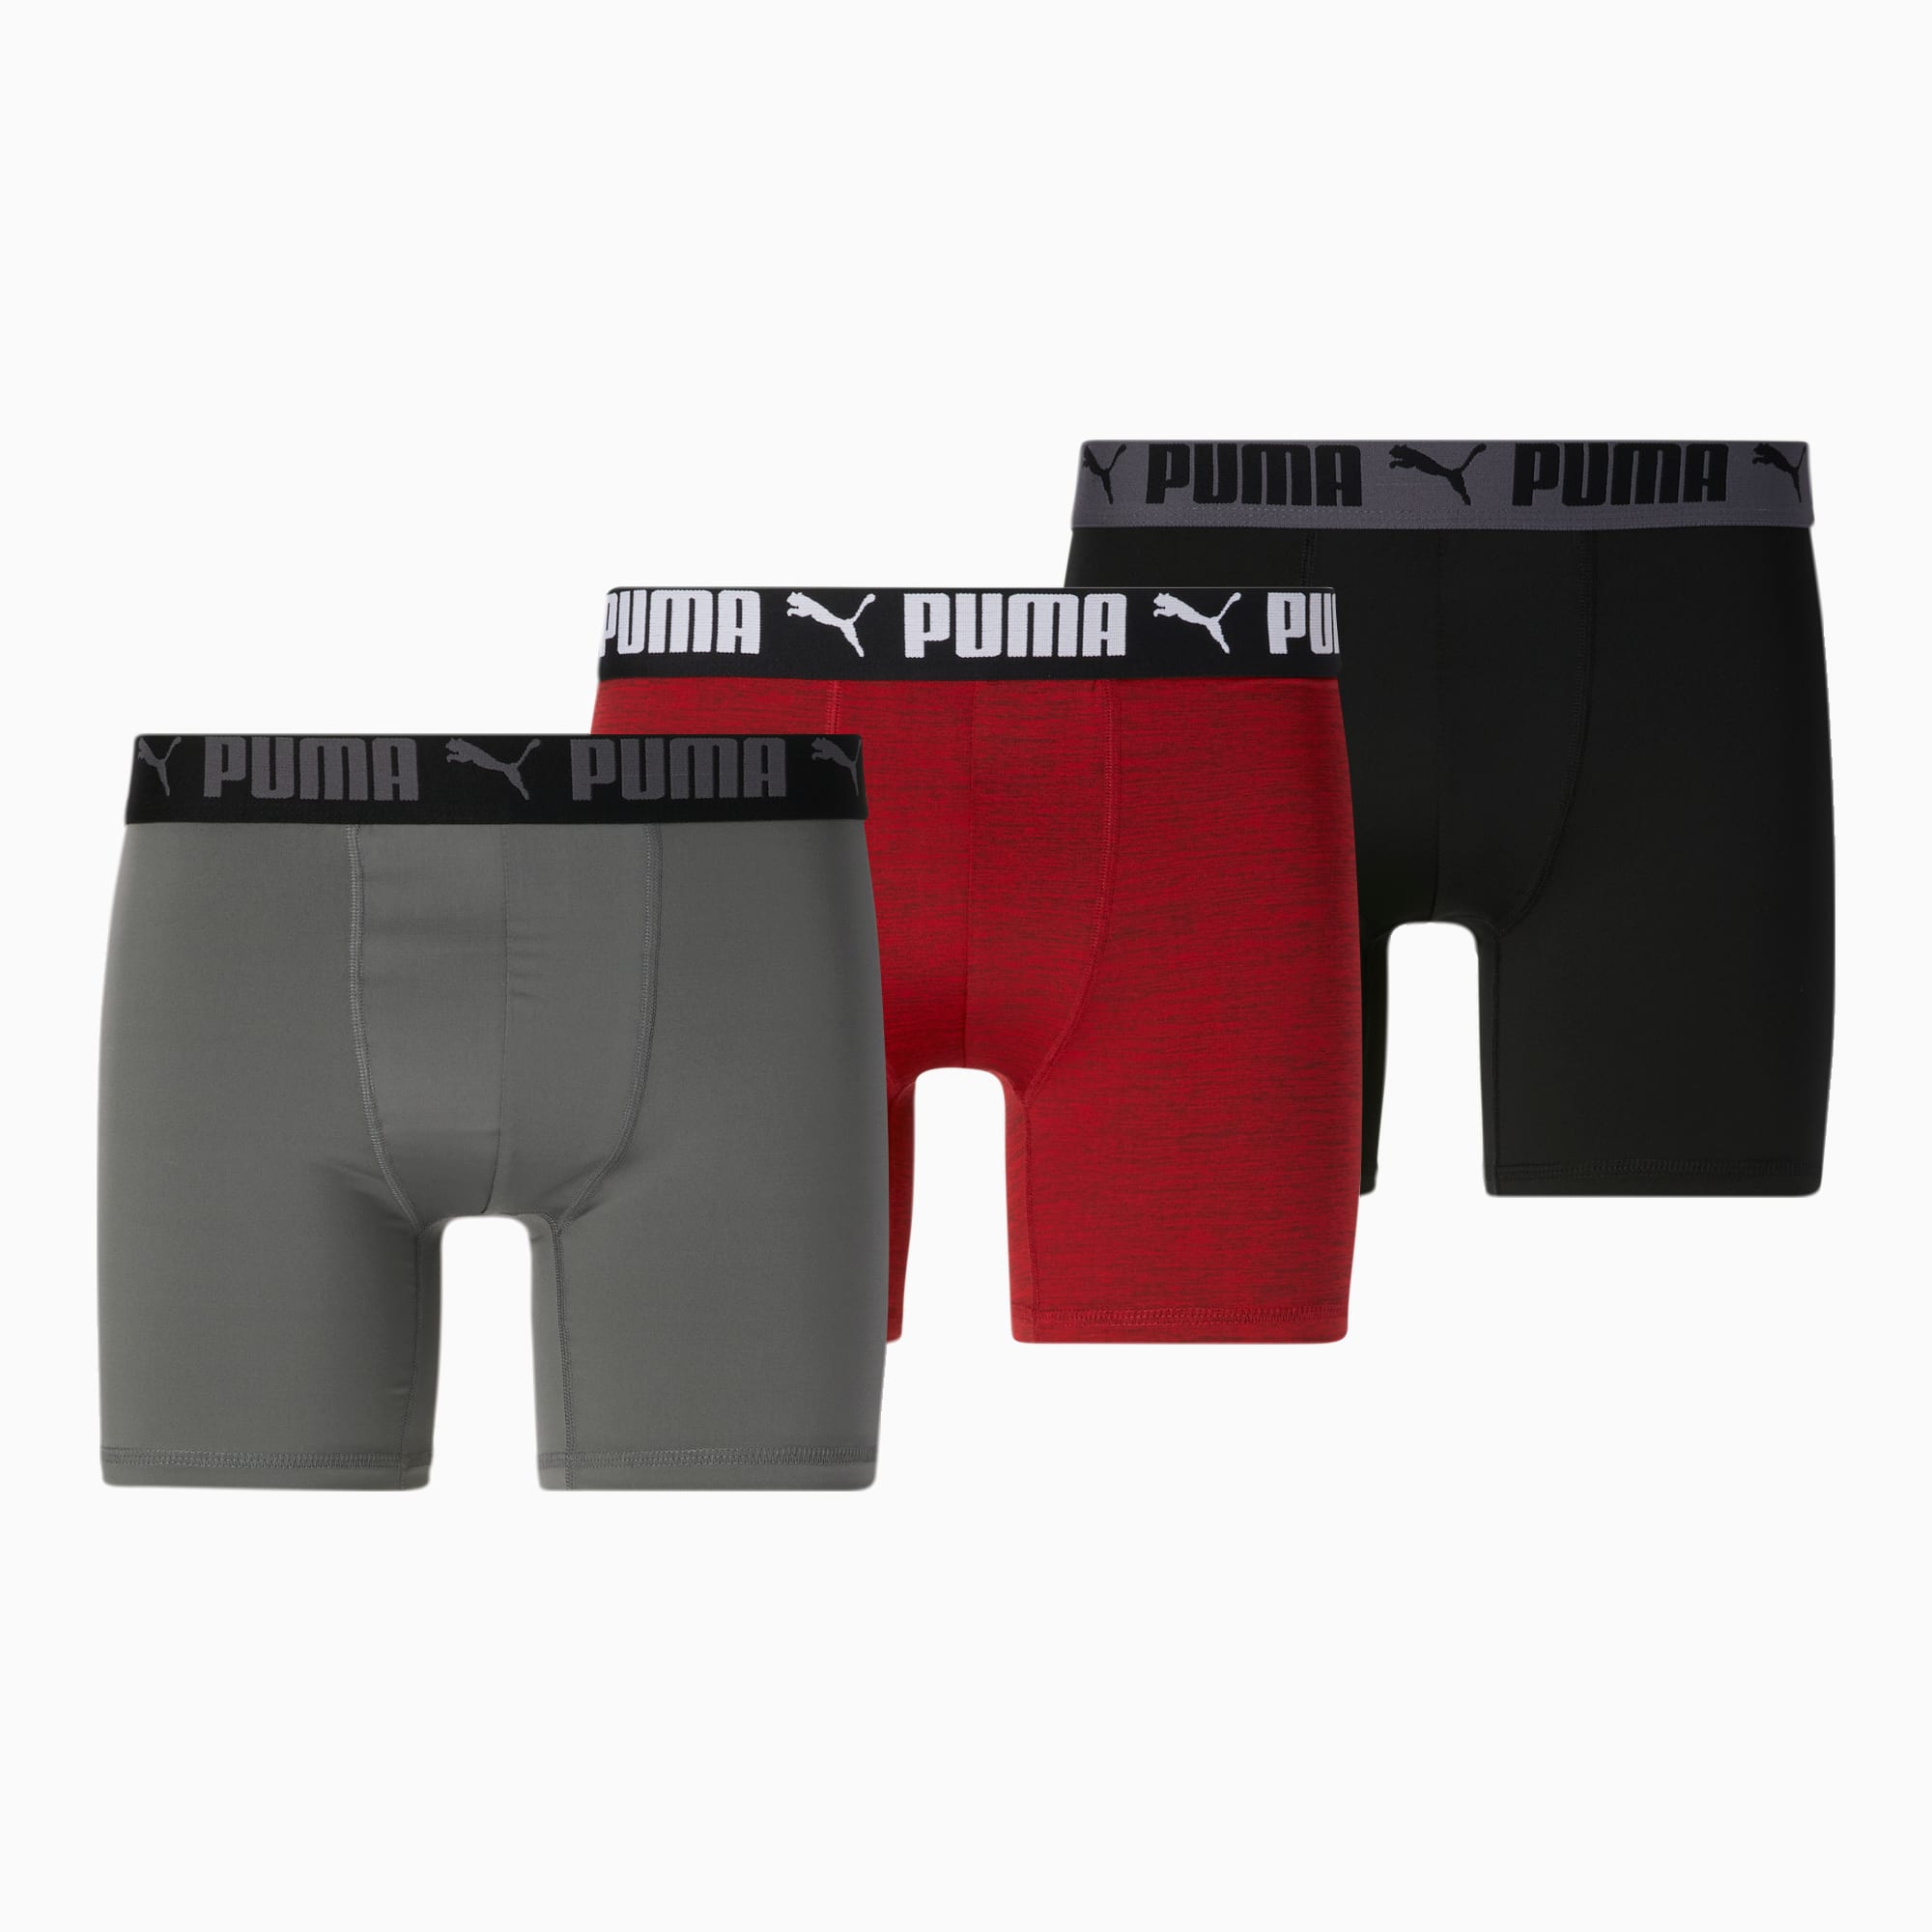 Athletic Works Men Boxer Briefs Underwear 3 Pack Multicolor Size M-8 NWOT